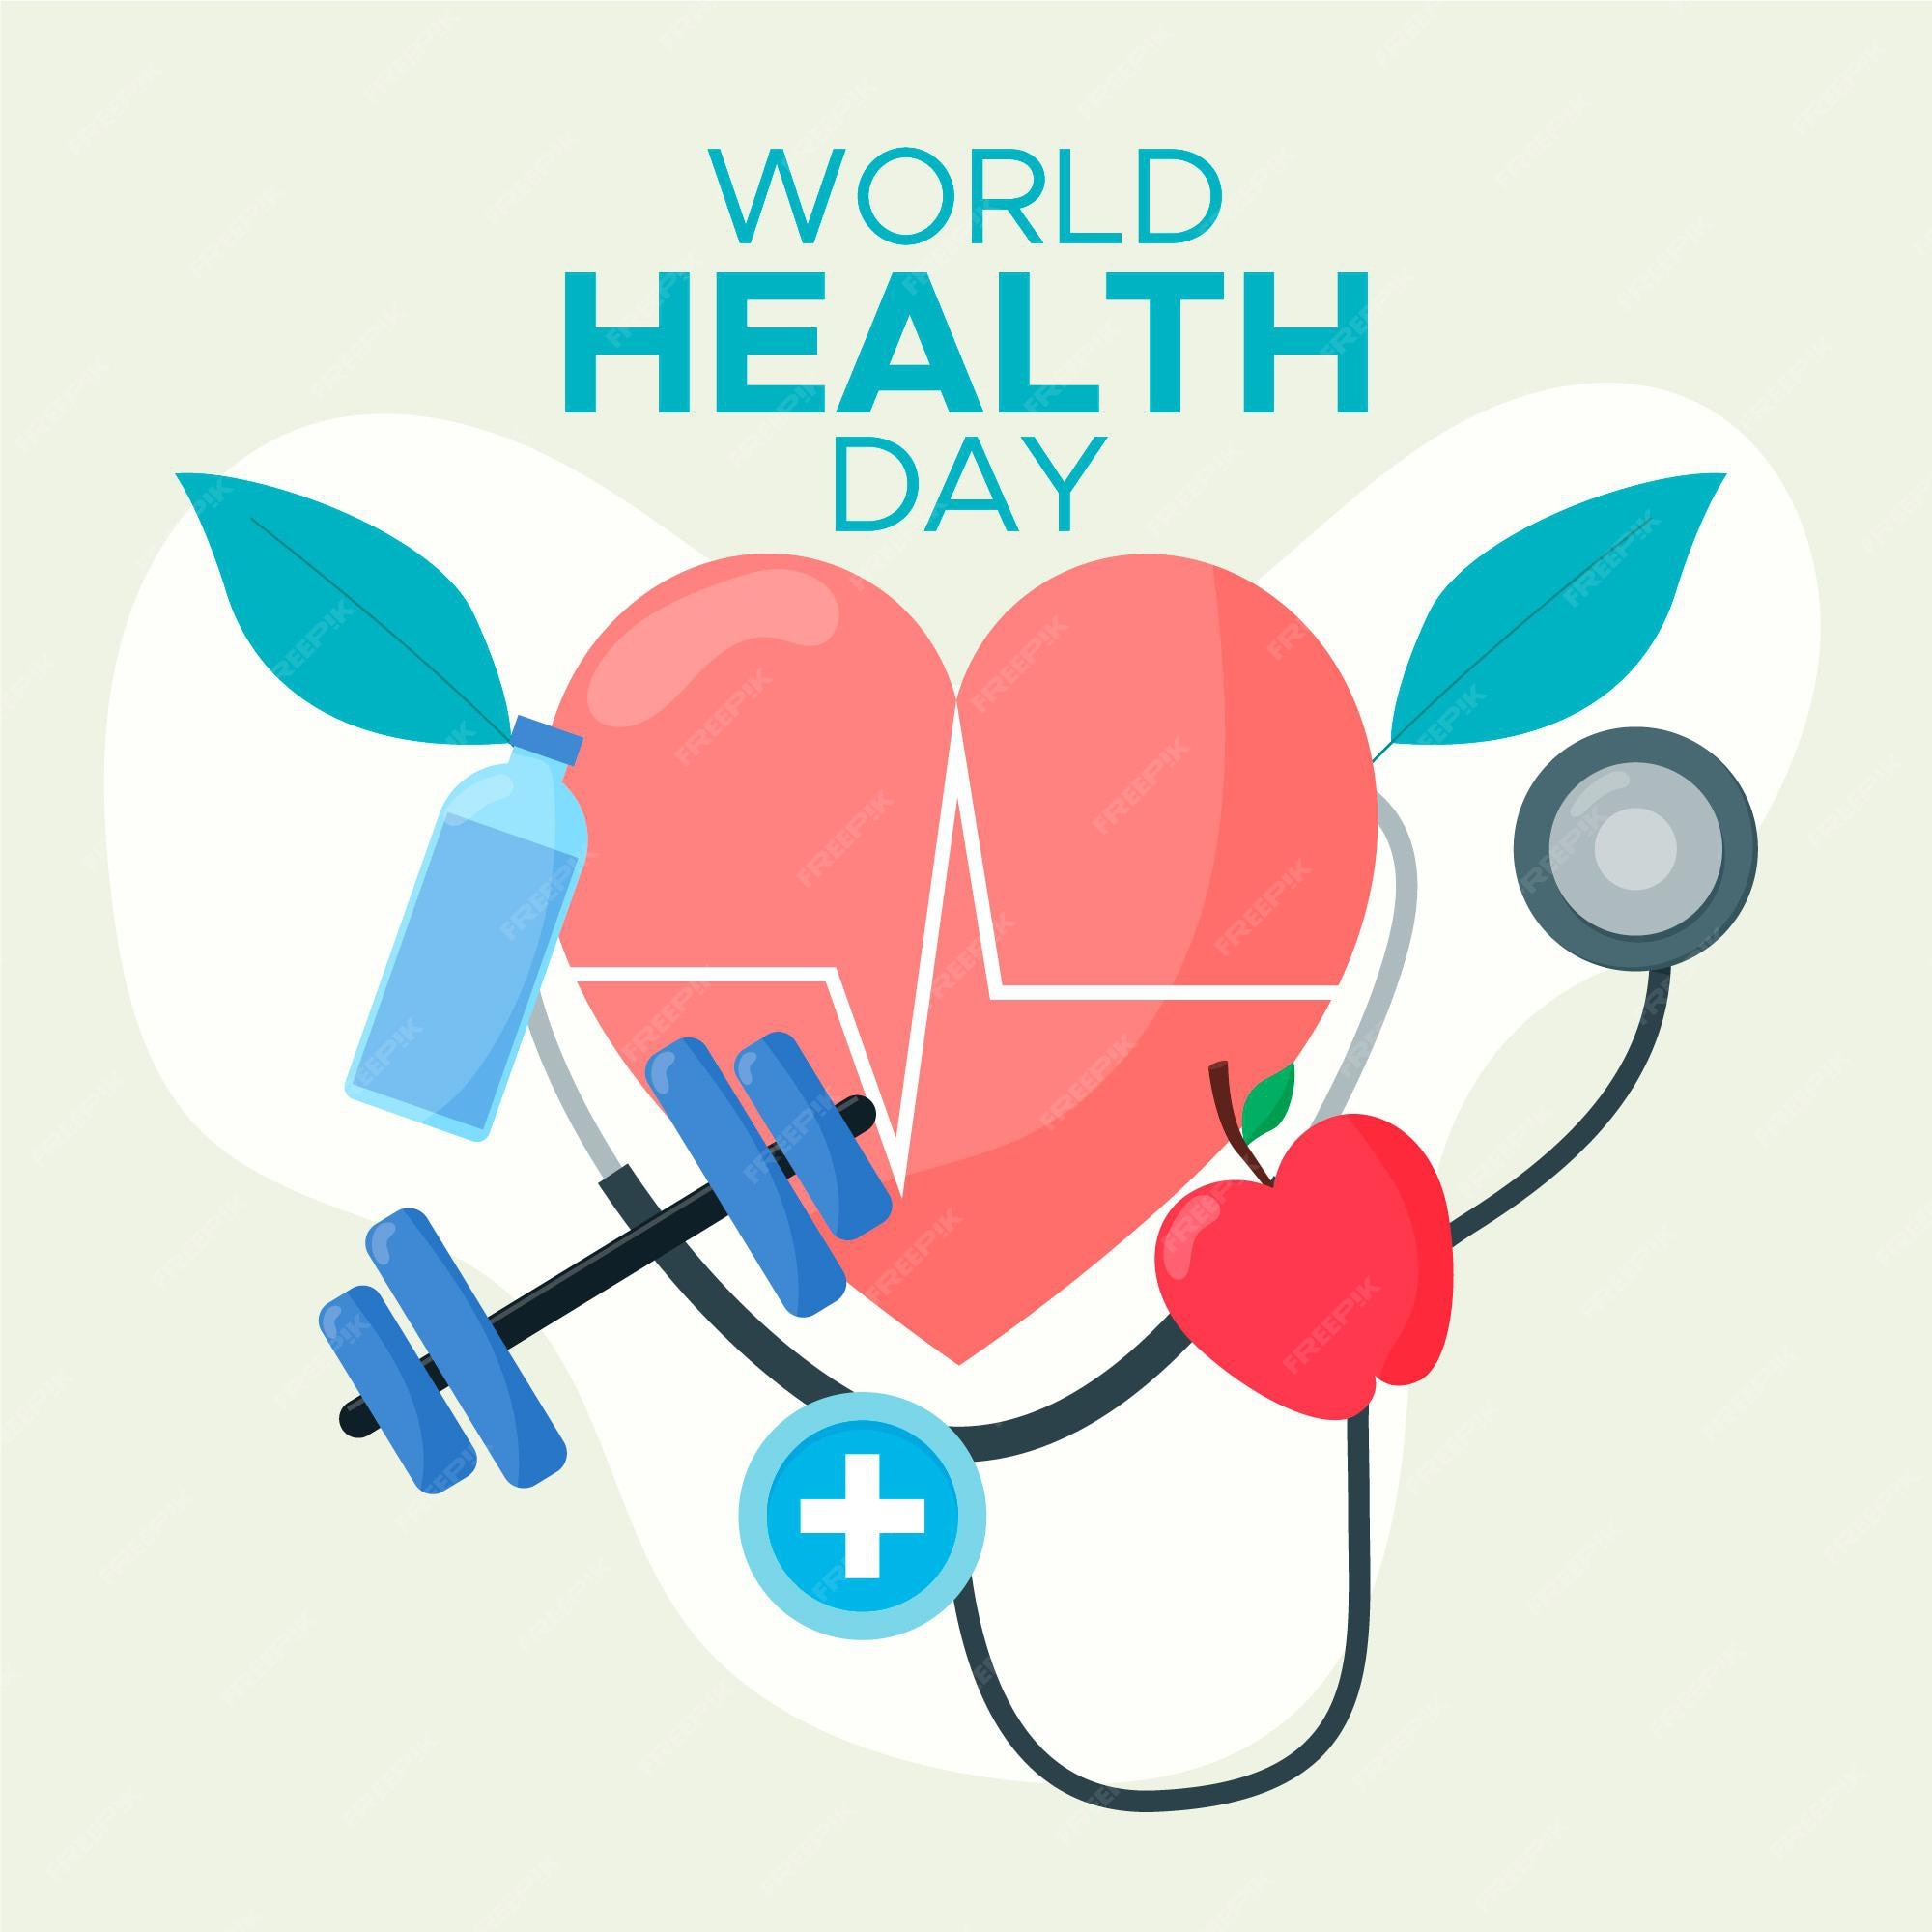 Vectores e ilustraciones de Salud integral para descargar gratis | Freepik